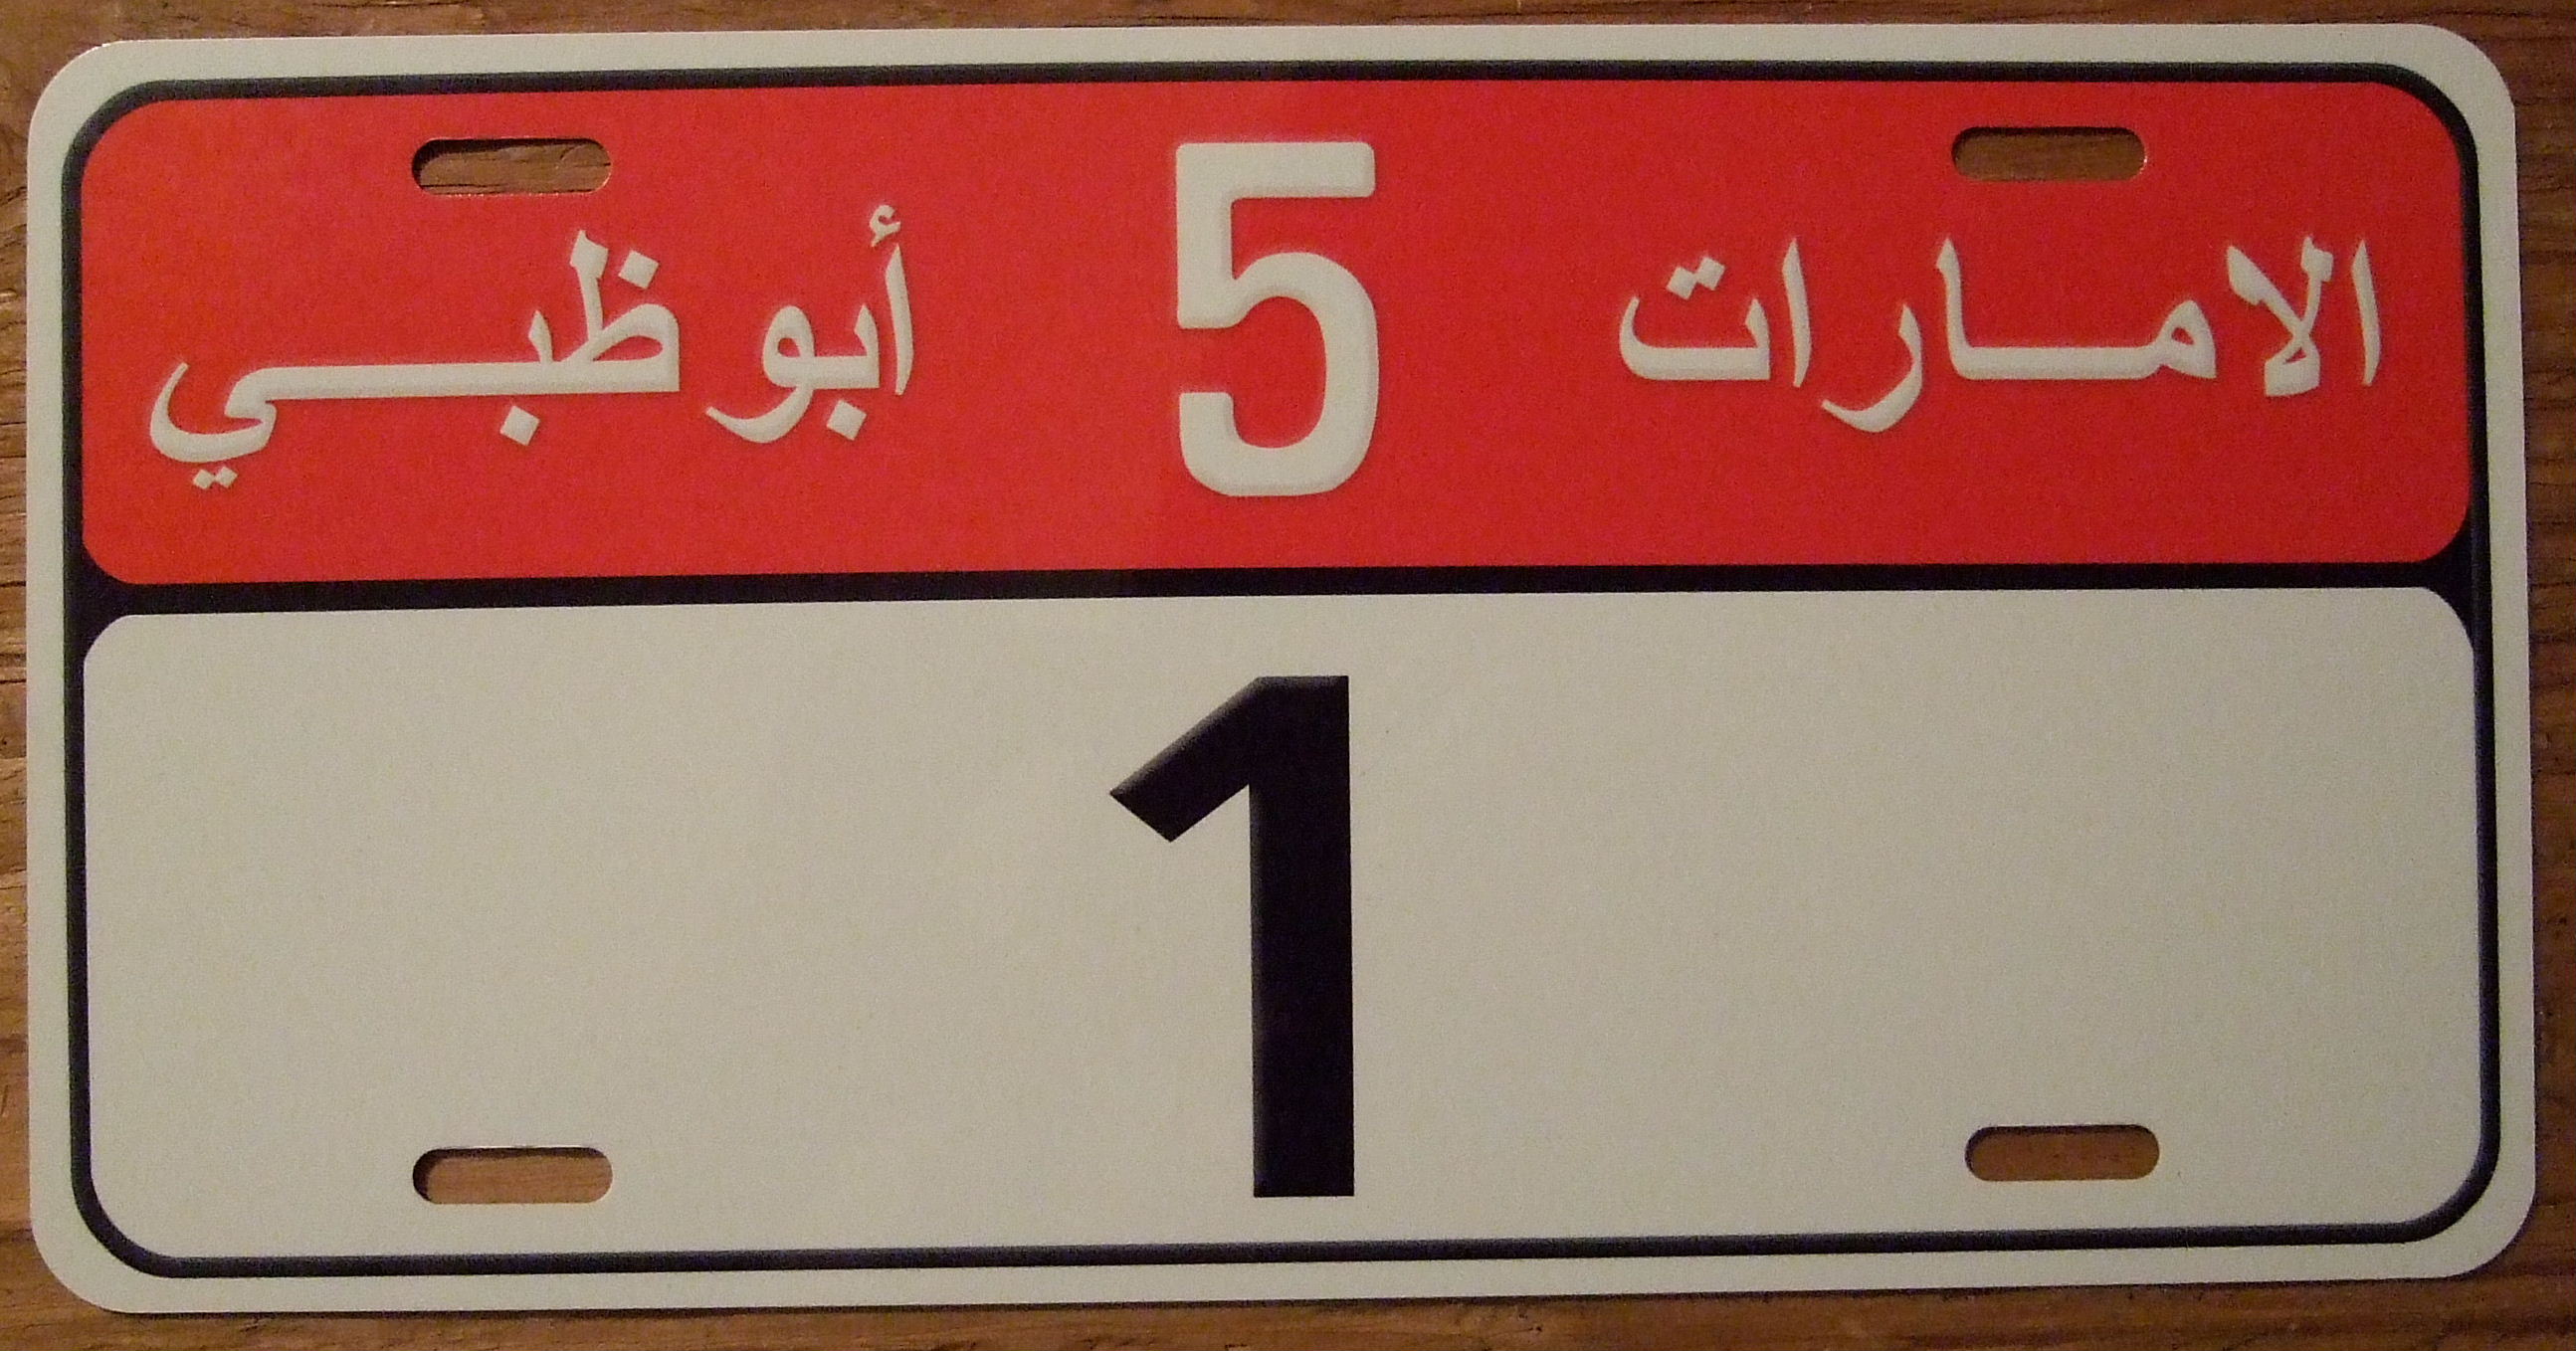 Самые дорогие номера на машину в мире. Автомобильные номера. Арабские номерные знаки. Арабские номера на машину. Дубайские номера на авто.